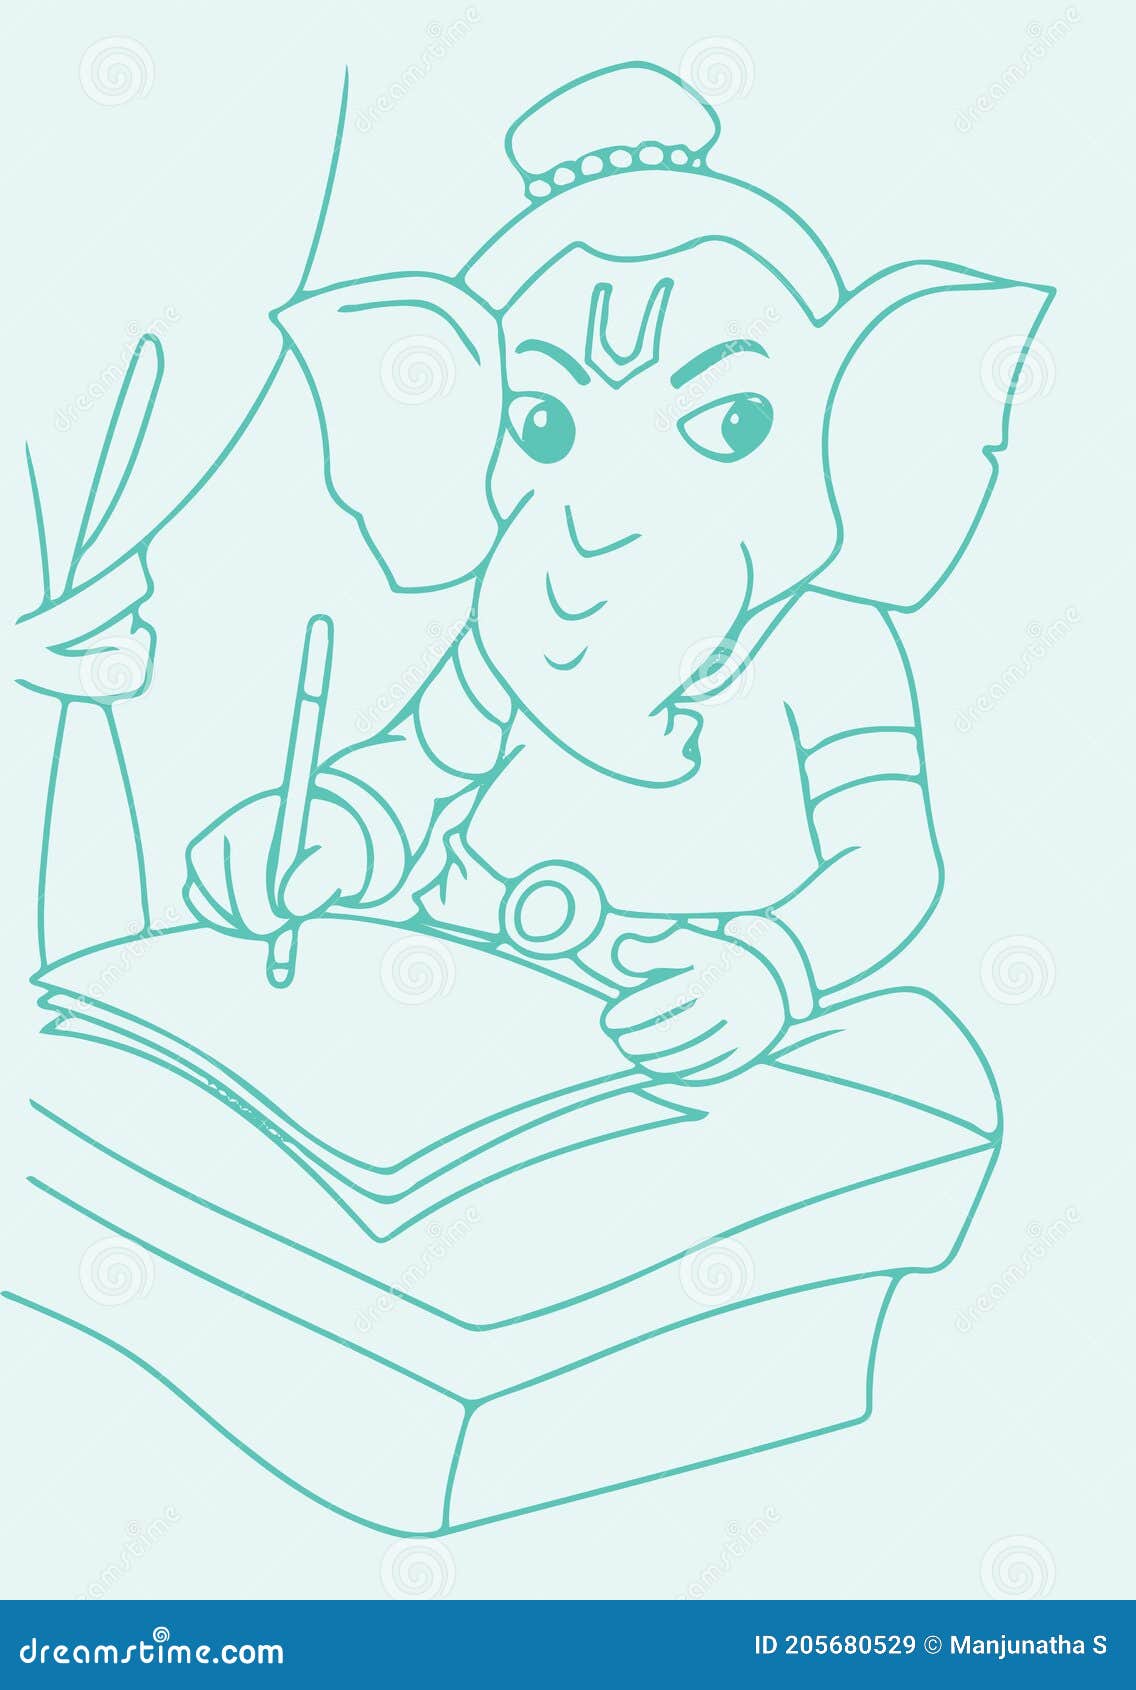 Vinayagar Drawing Video  Cute Baby Ganesha Drawing Challenge  Live Art  Chennai  YouTube